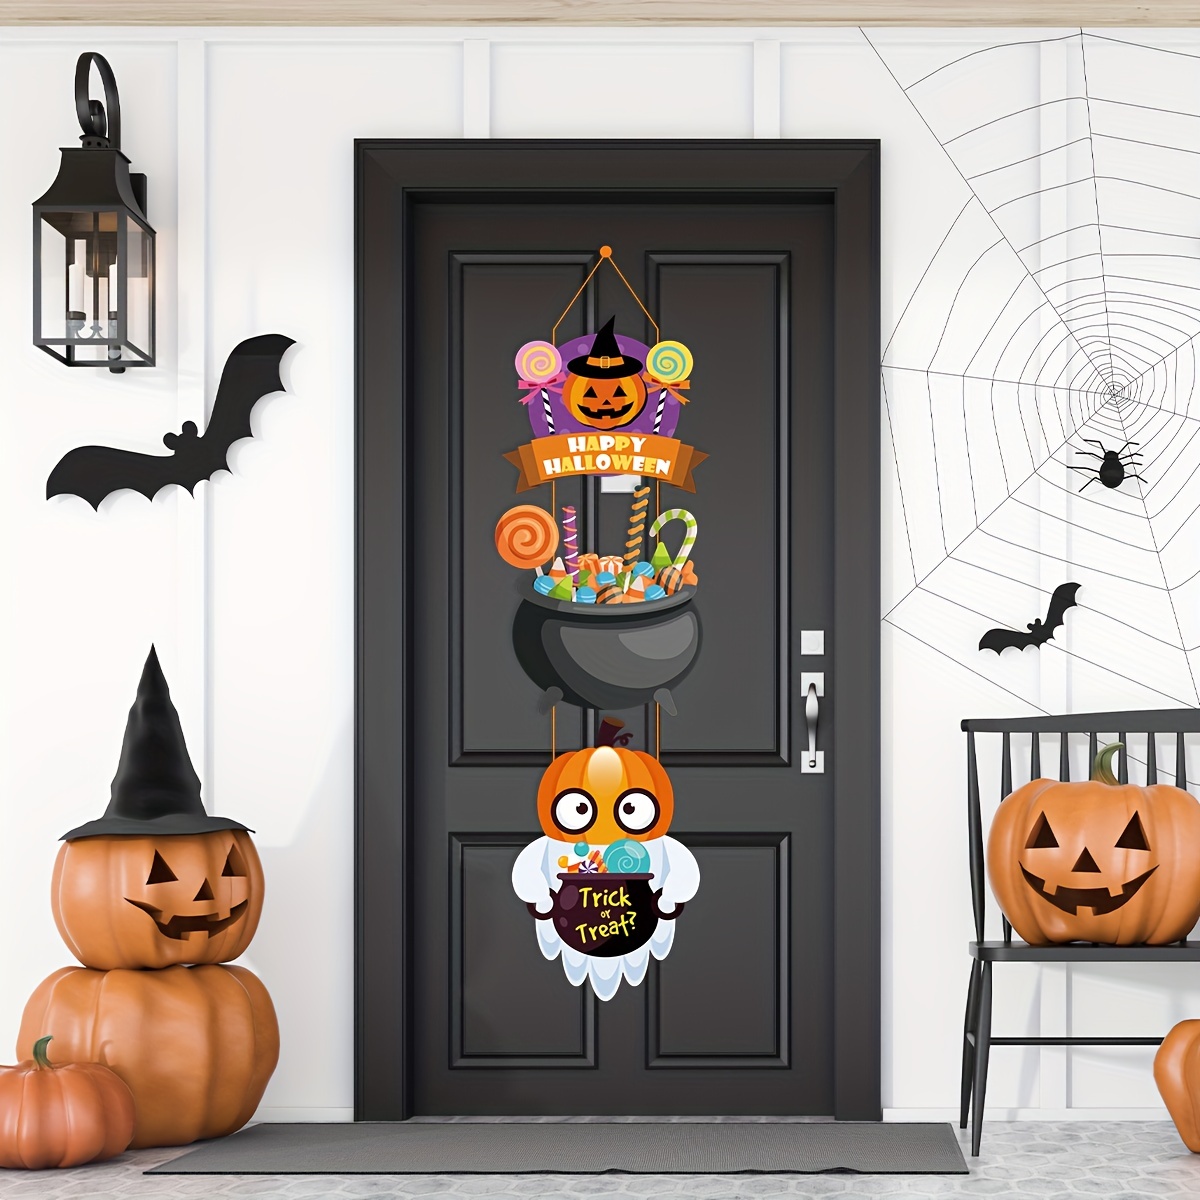 Halloween Party Decoration, Pumpkin Magic Hat Door Hanging Ghost ...